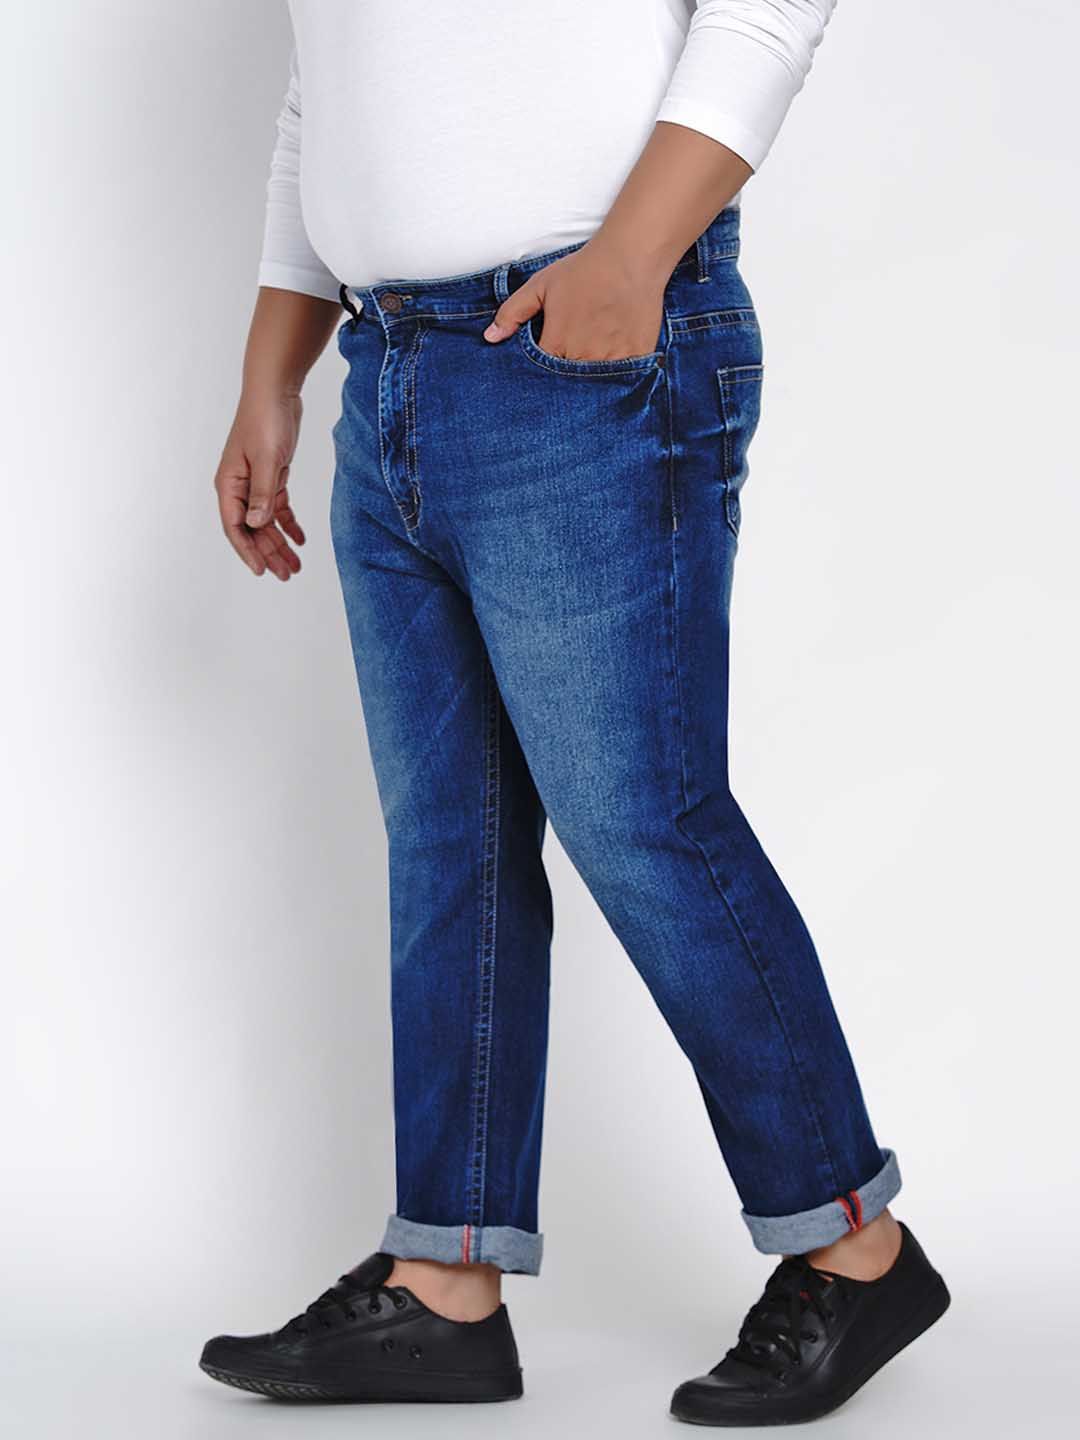 affordables/jeans/JPJ2514/jpj2514-4.jpg